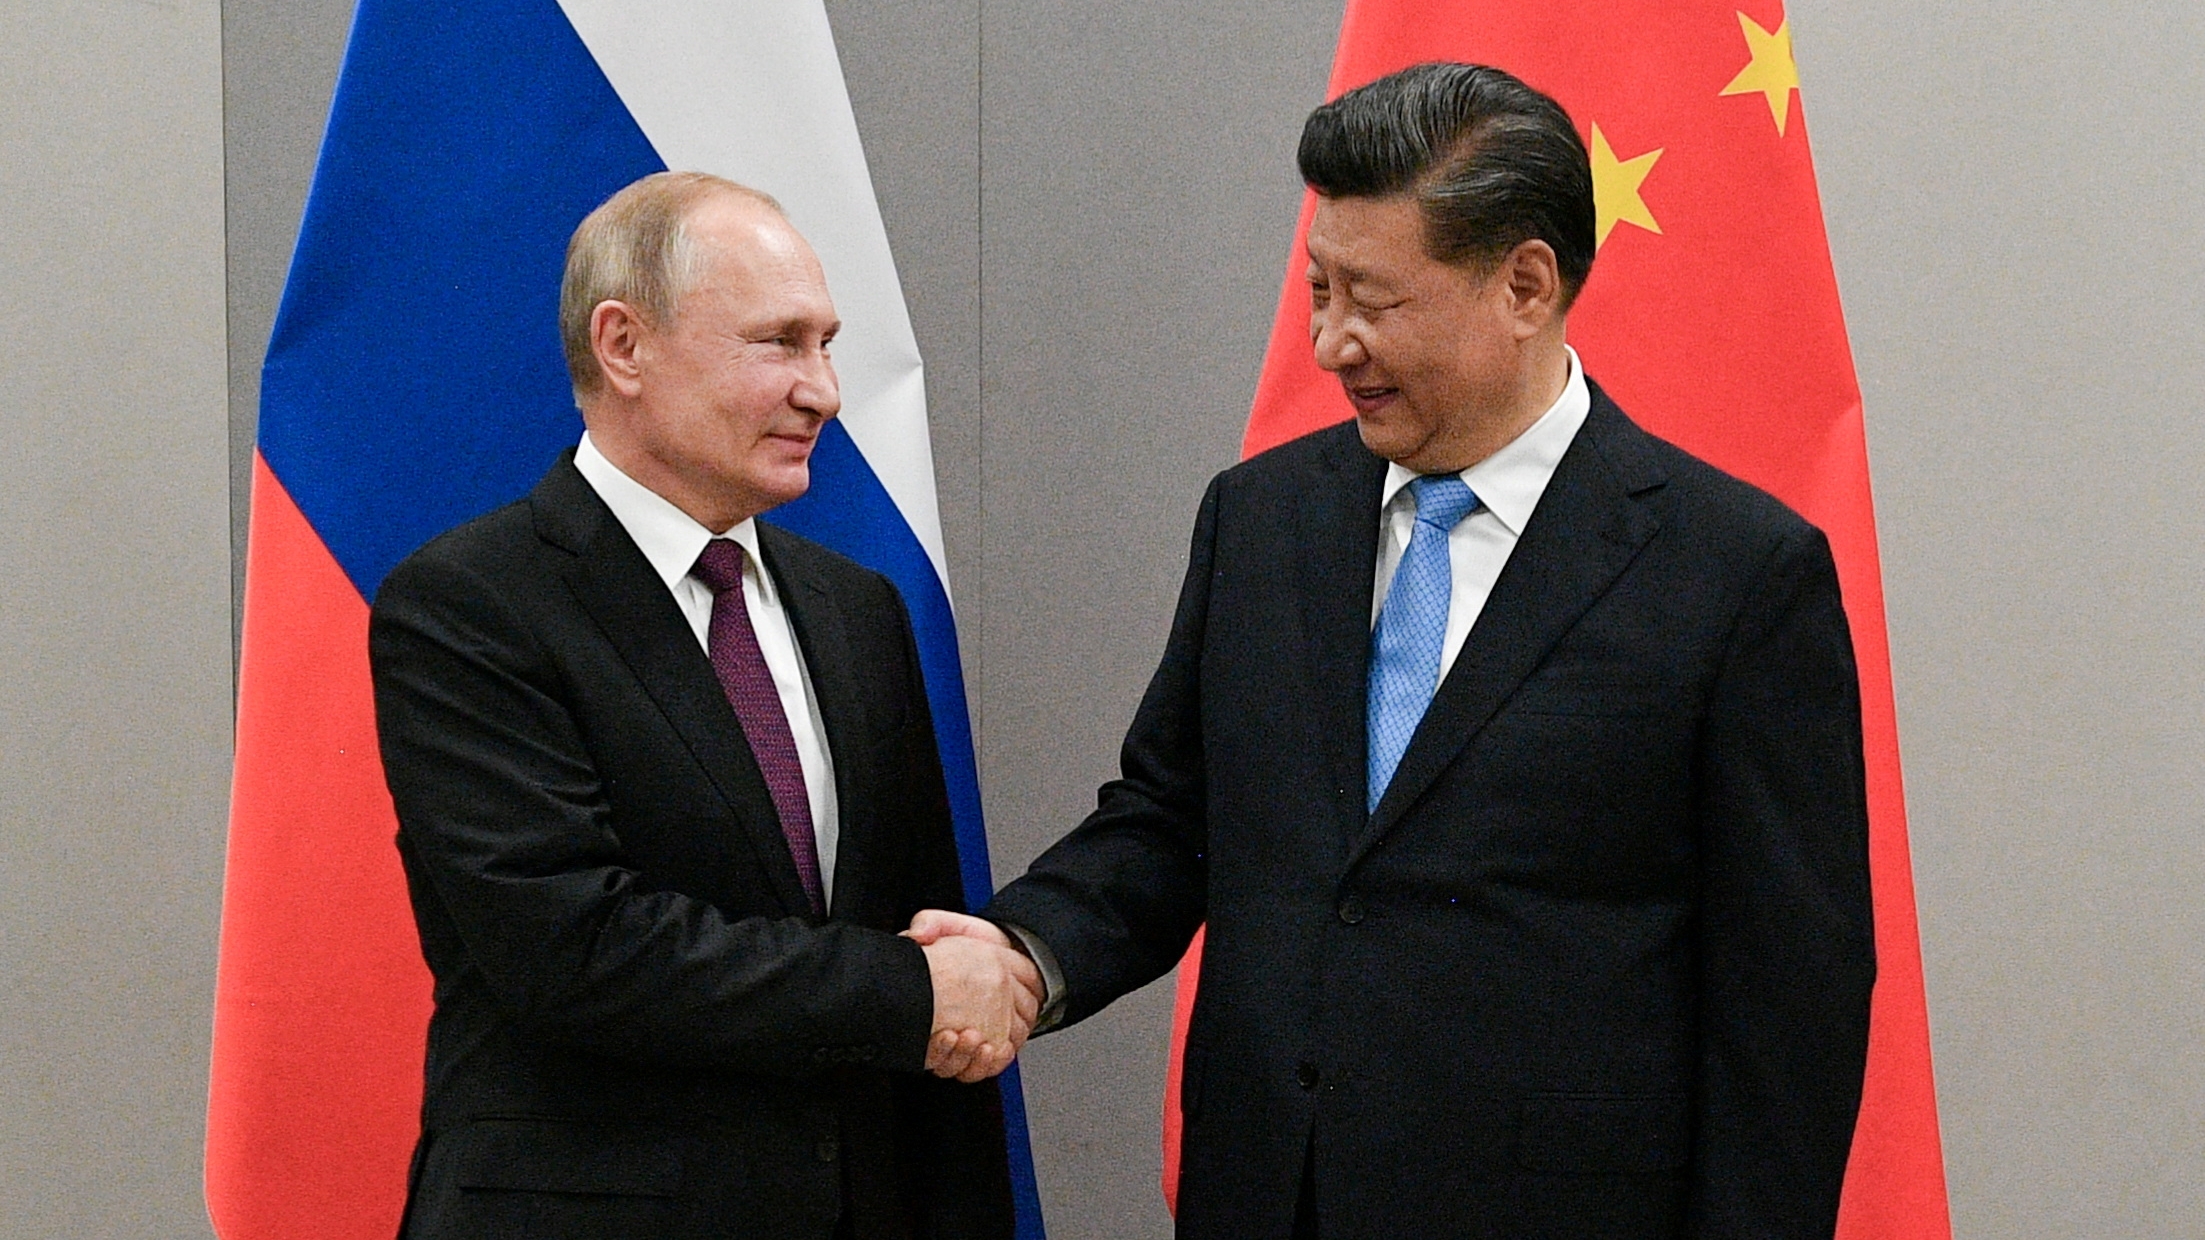 El presidente ruso, Vladímir Putin, estrecha la mano del presidente chino, Xi Jinping, durante su reunión al margen de una cumbre de los BRICS, en Brasilia, Brasil, 13 de noviembre de 2019.  Sputnik/Ramil Sitdikov/Kremlin vía REUTERS/Archivo